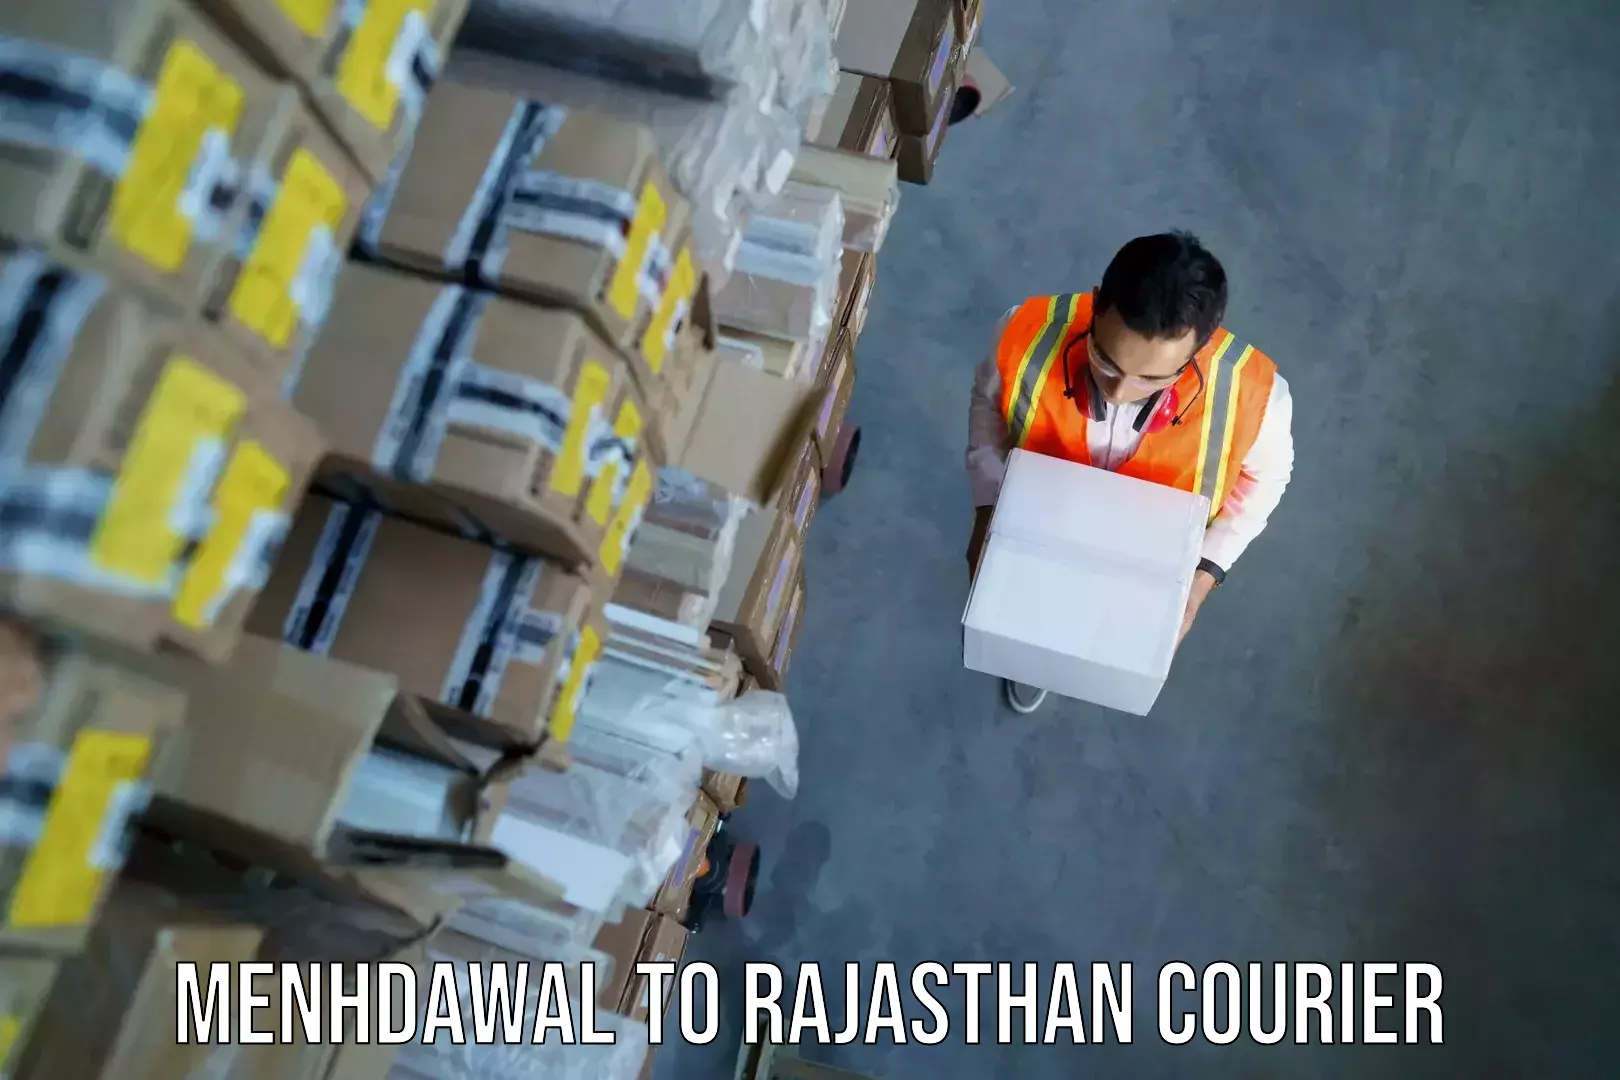 Baggage courier insights Menhdawal to Hanumangarh